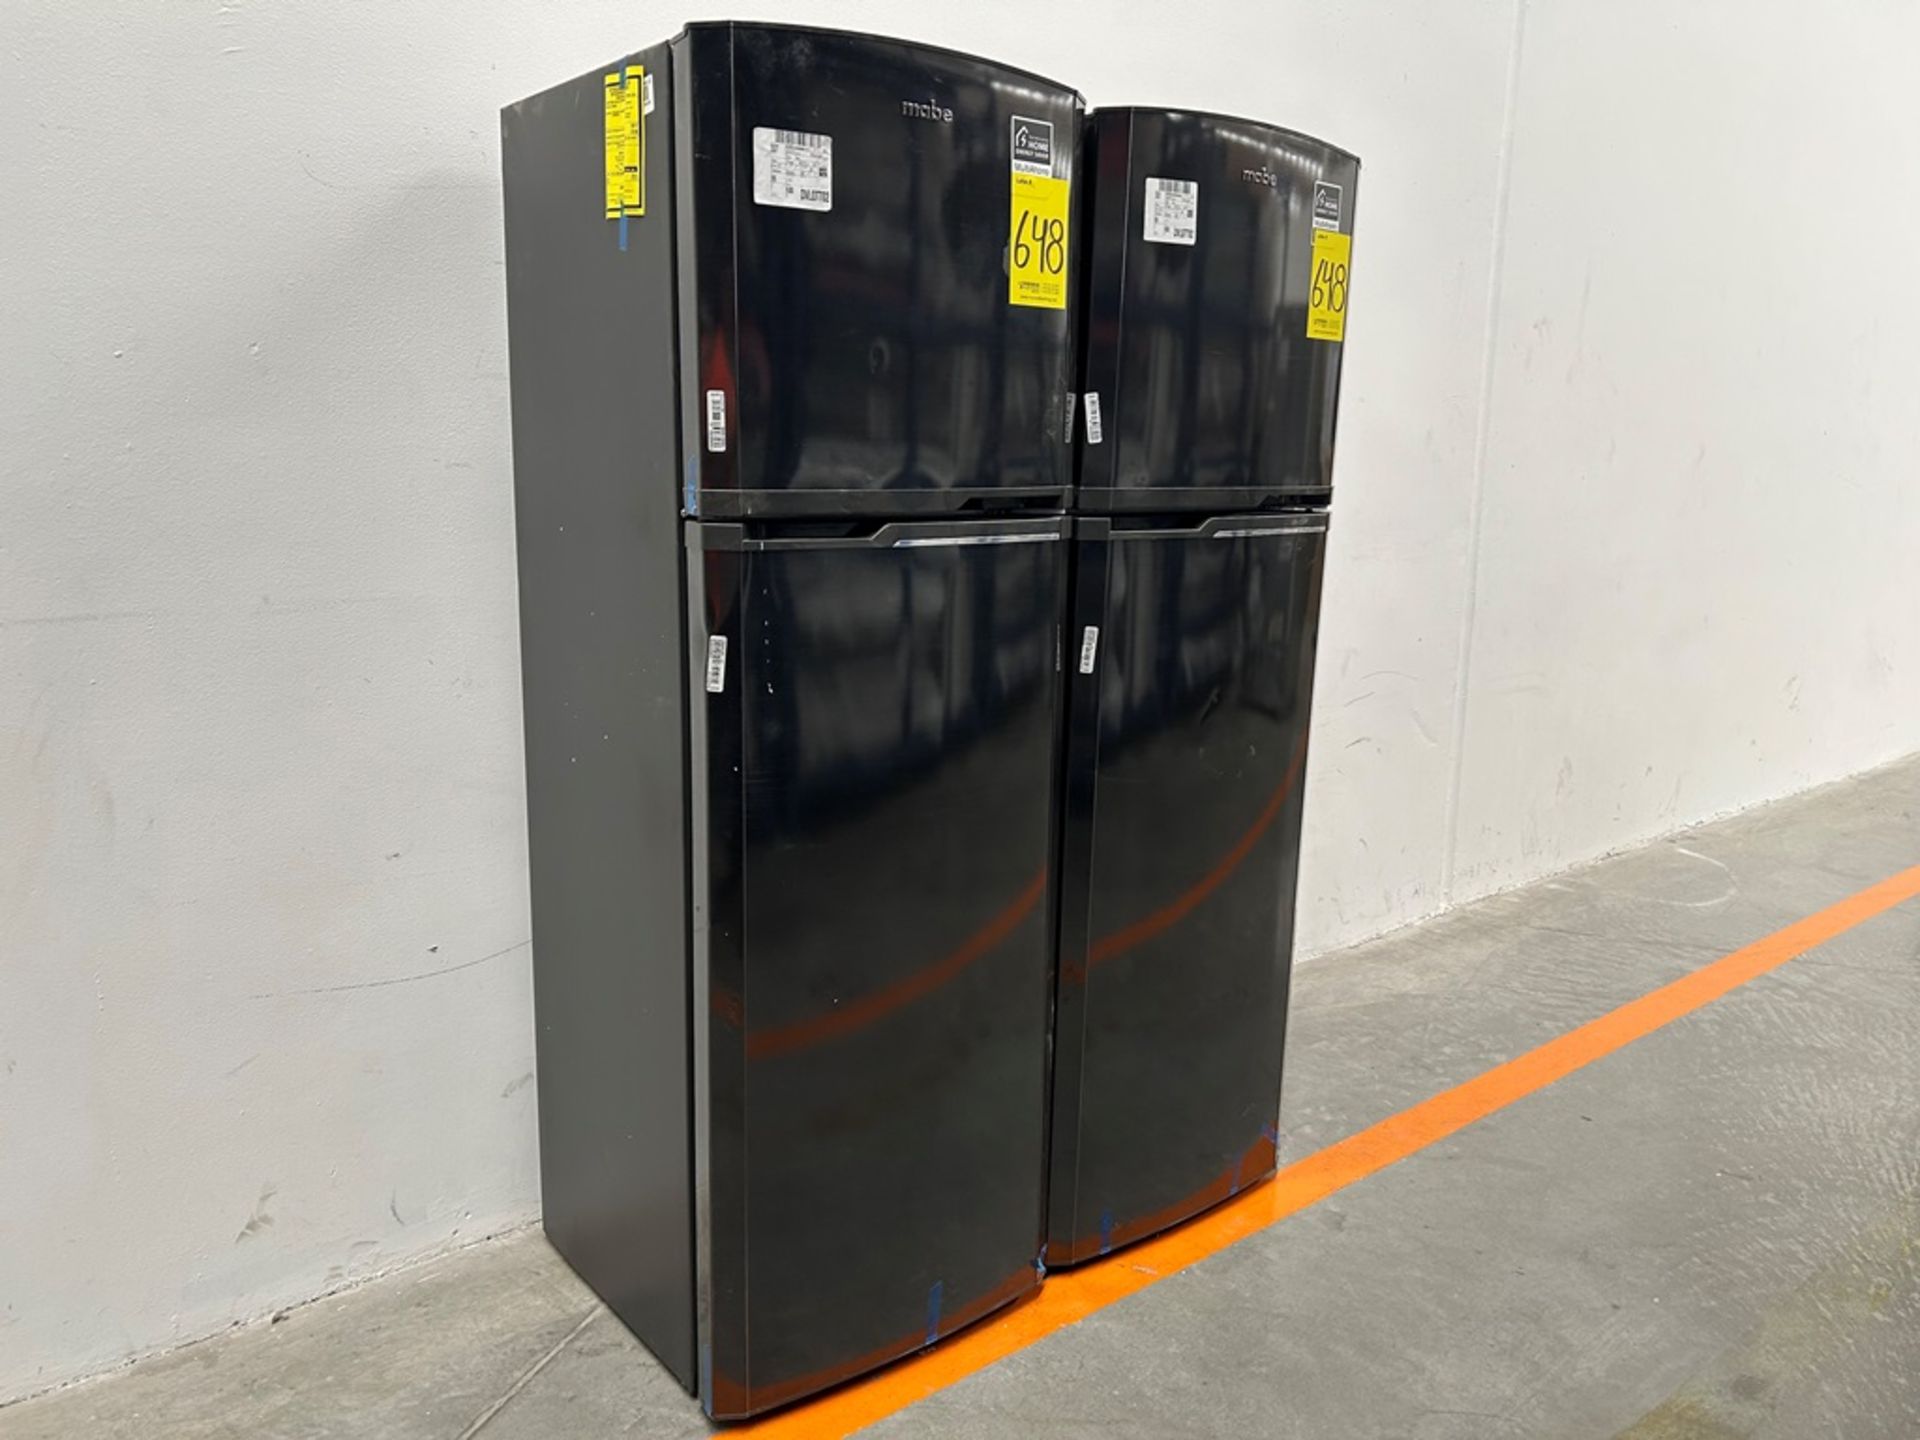 Lote de 2 refrigeradores contiene: 1 refrigerador Marca MABE, Modelo RMA250PVMRP0, Serie 13859, Col - Image 3 of 18